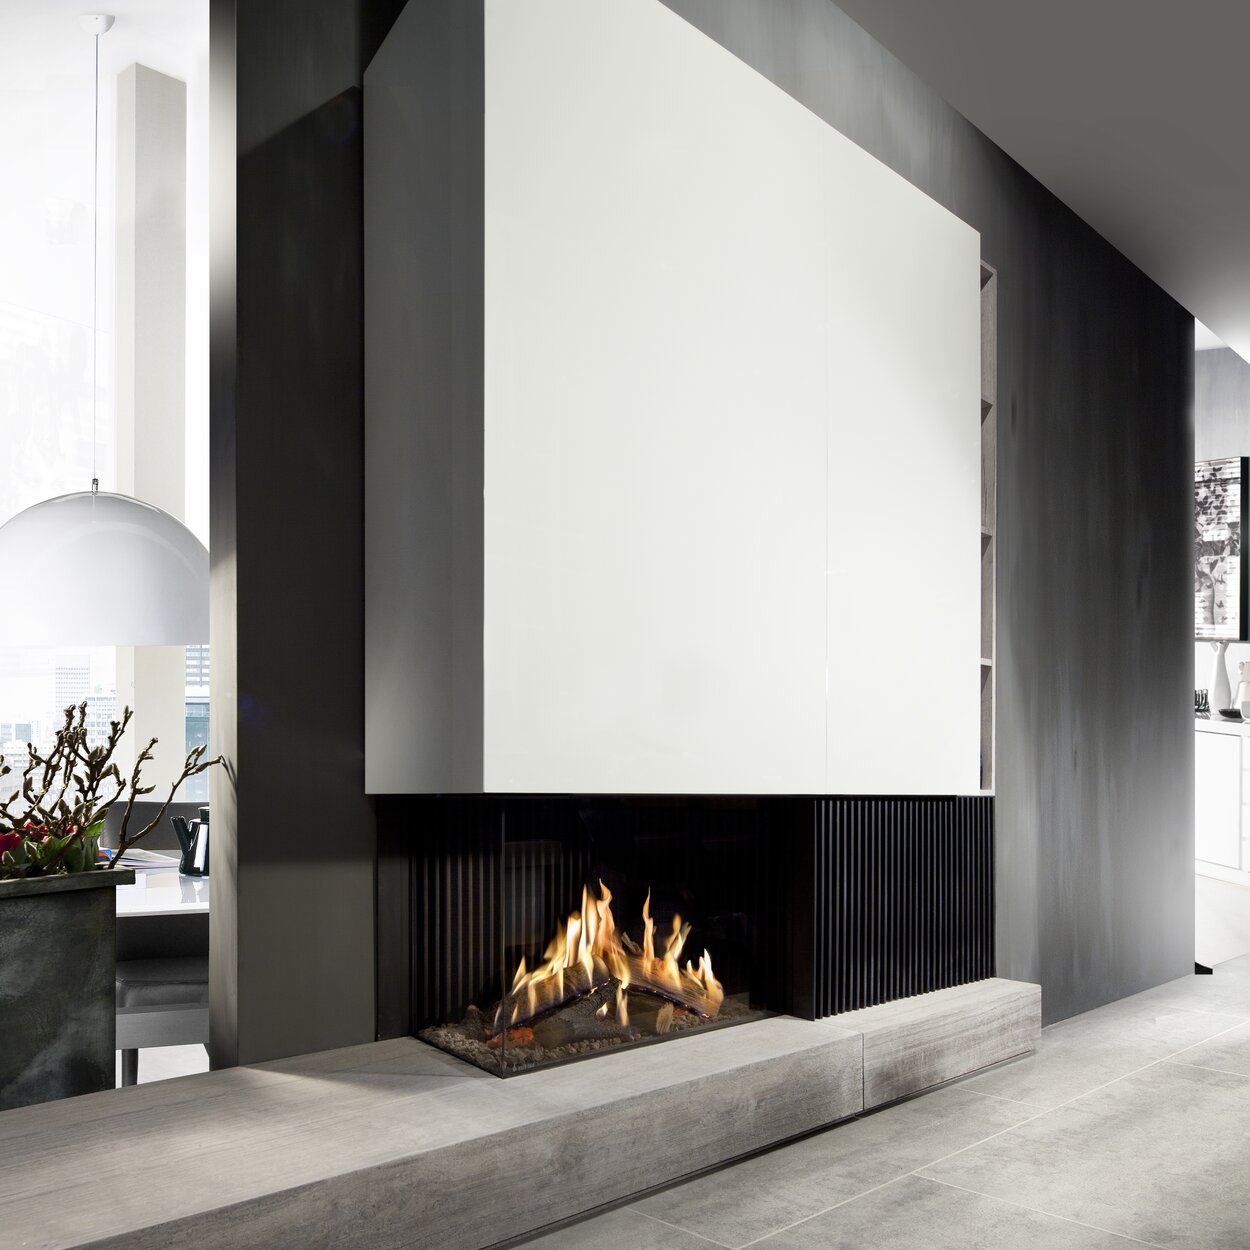 Zweiseitig verglaster Gas-Kamin GP80/55C auf Steinabsatz mit weisser Verkleidung im modernen Wohnzimmer